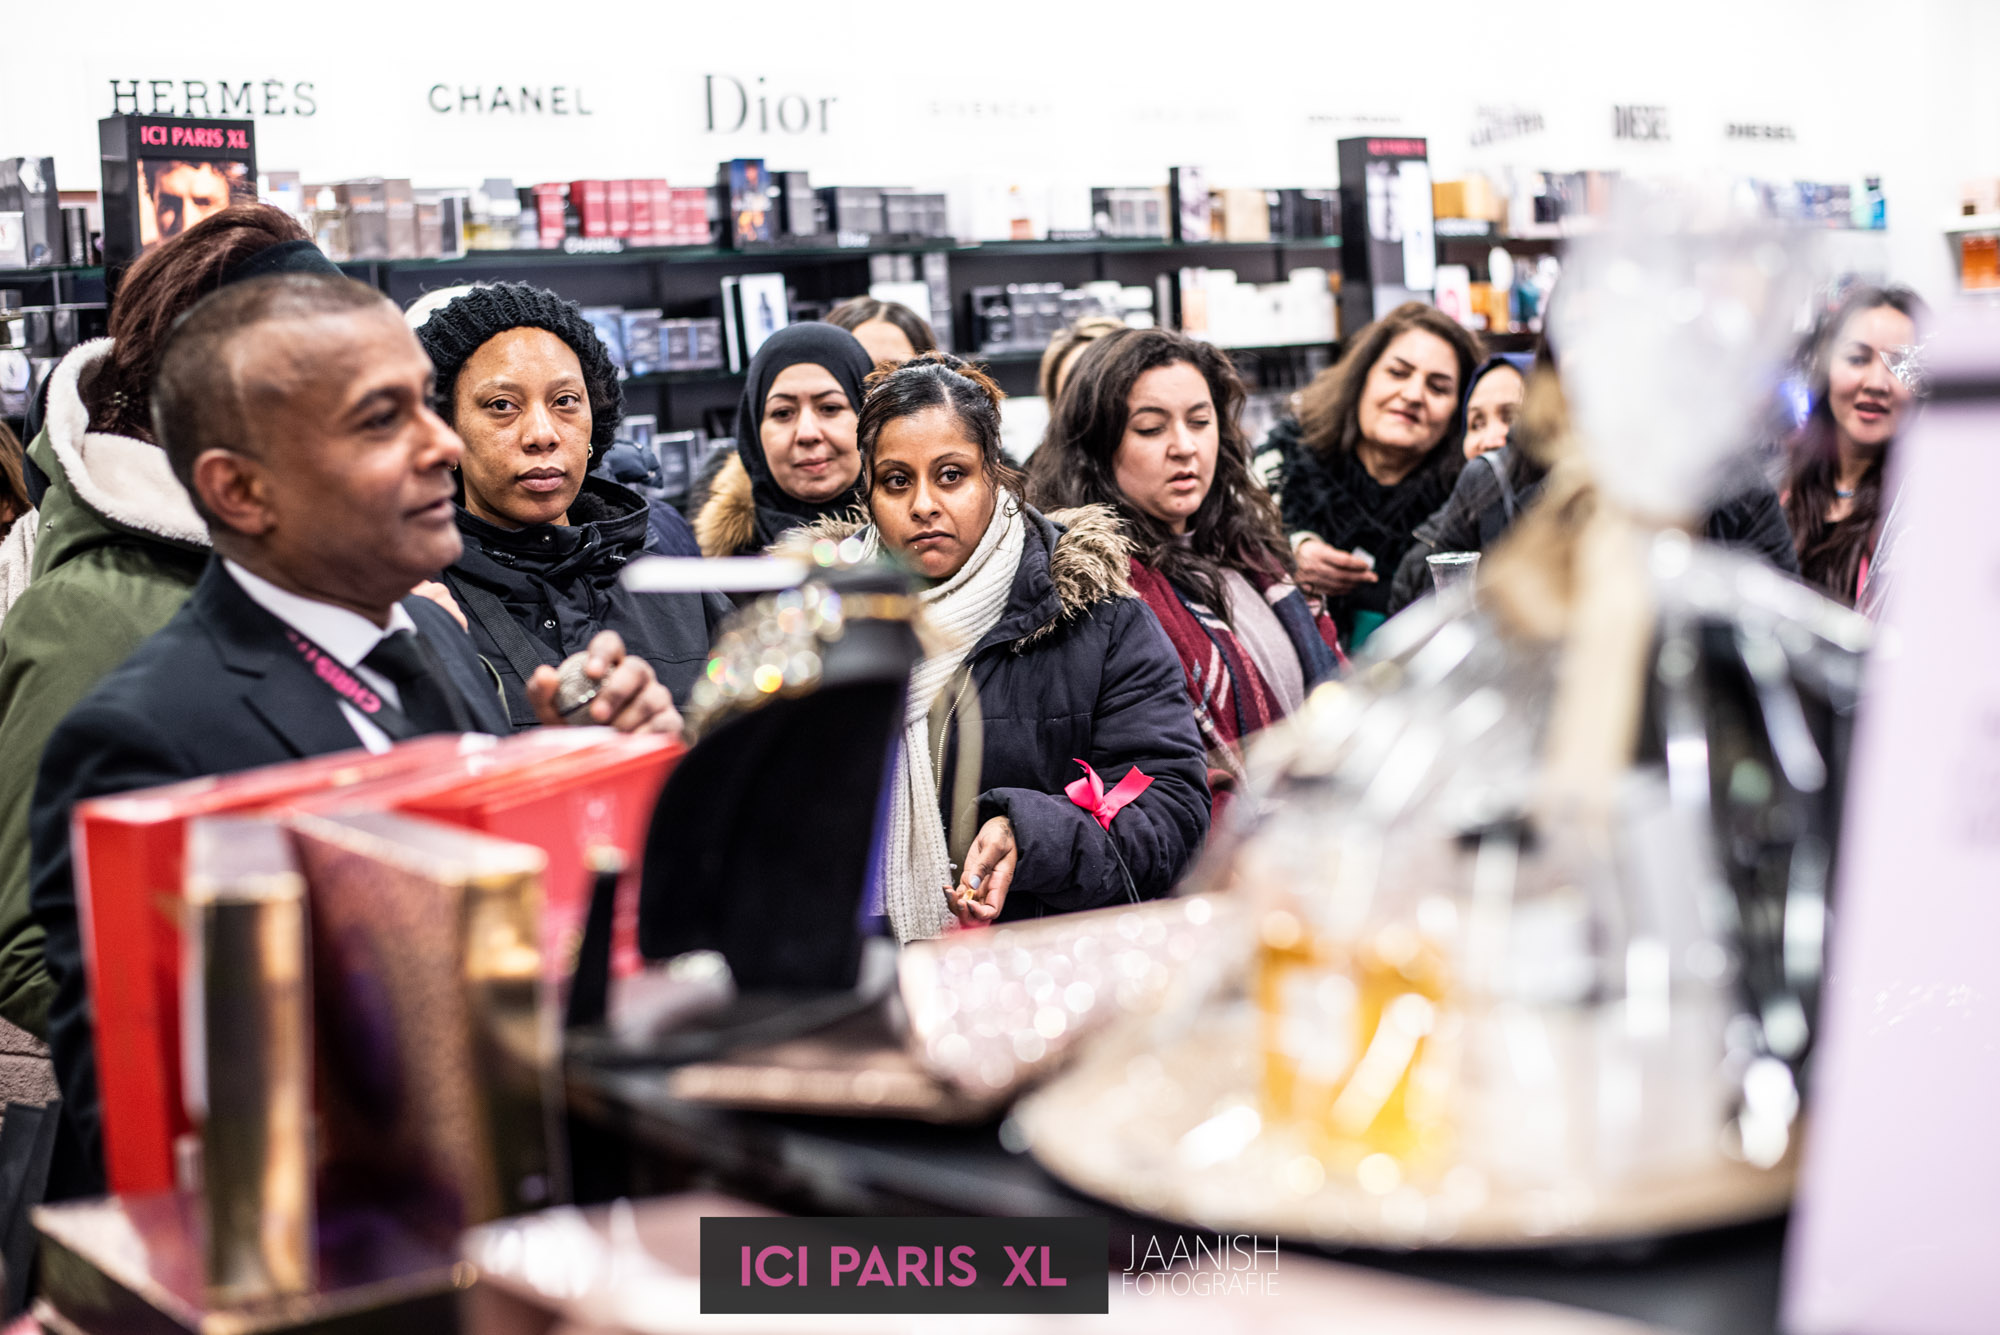 ICI Paris bedrijfsfeest evenement fotograaf in den haag 17